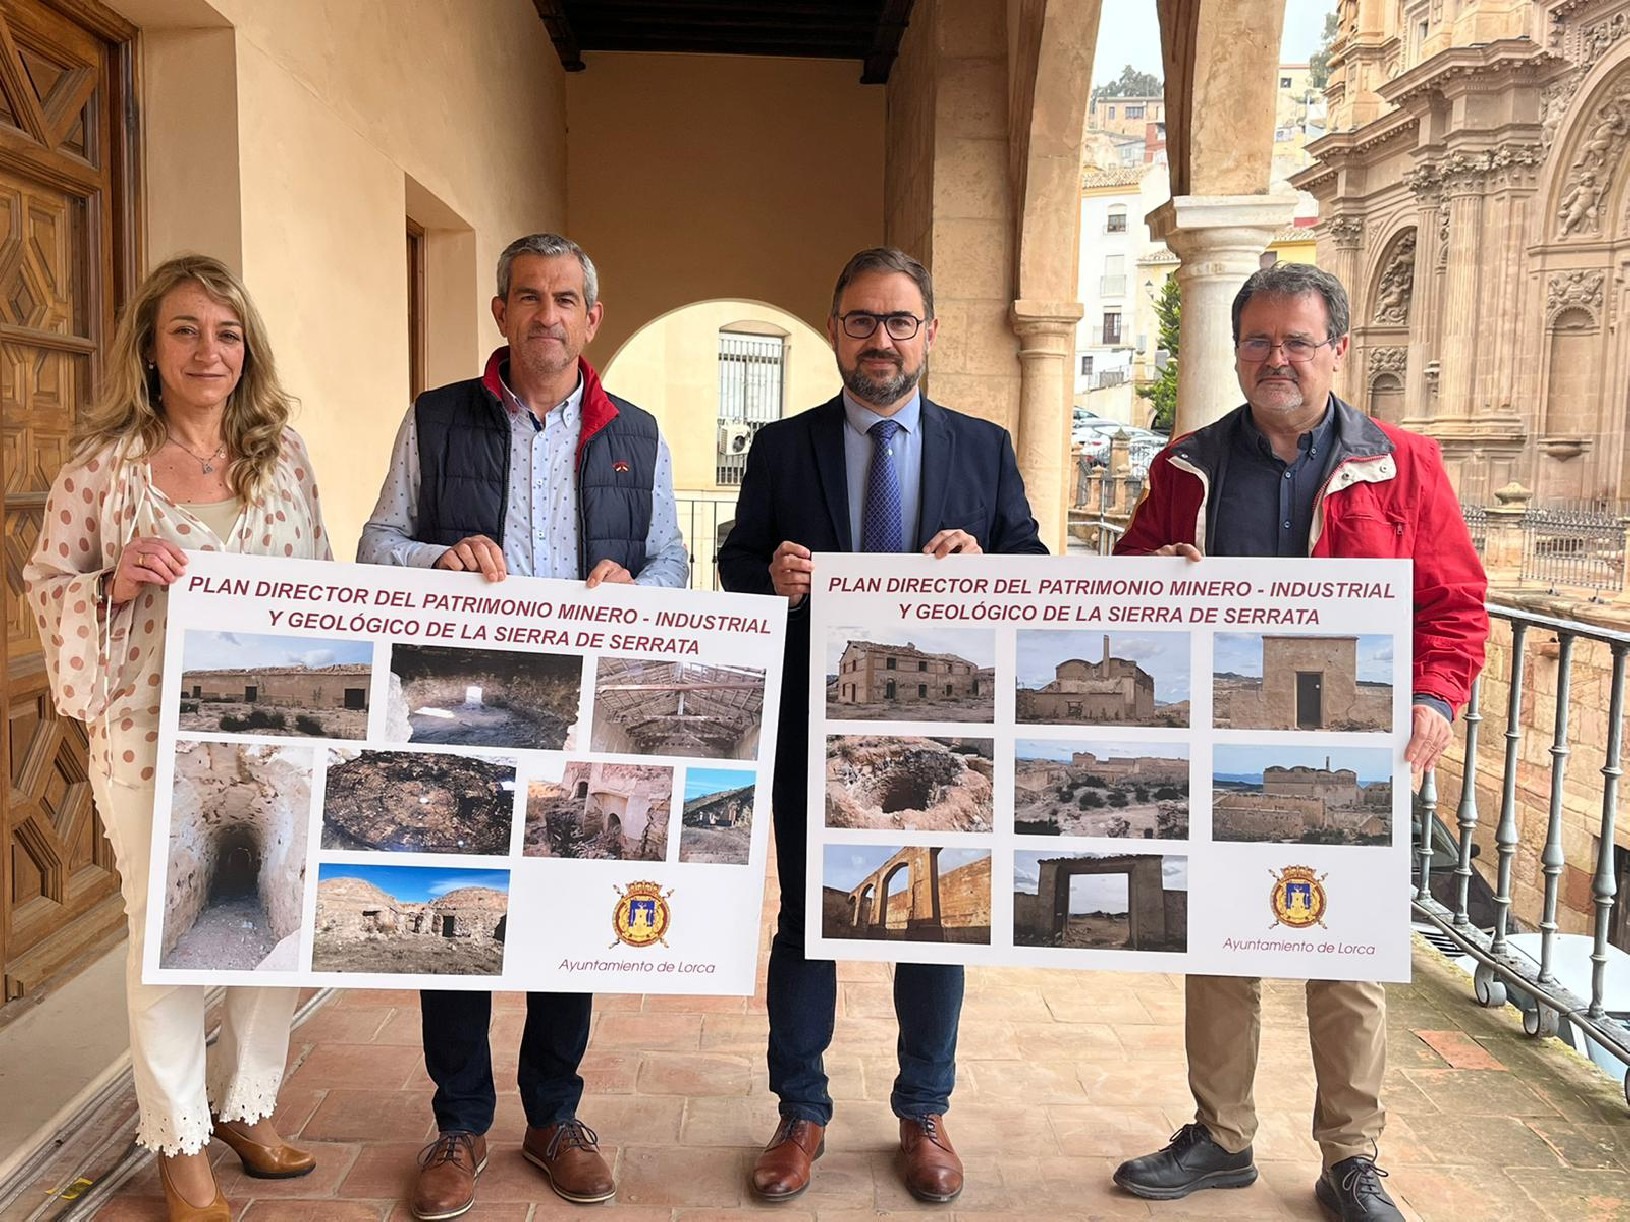 El Ayuntamiento de Lorca y Campoder firman la recepción de la subvención para redactar el Plan director del Patrimonio Minero-Industrial y Geológico de la Sierra de Serrata